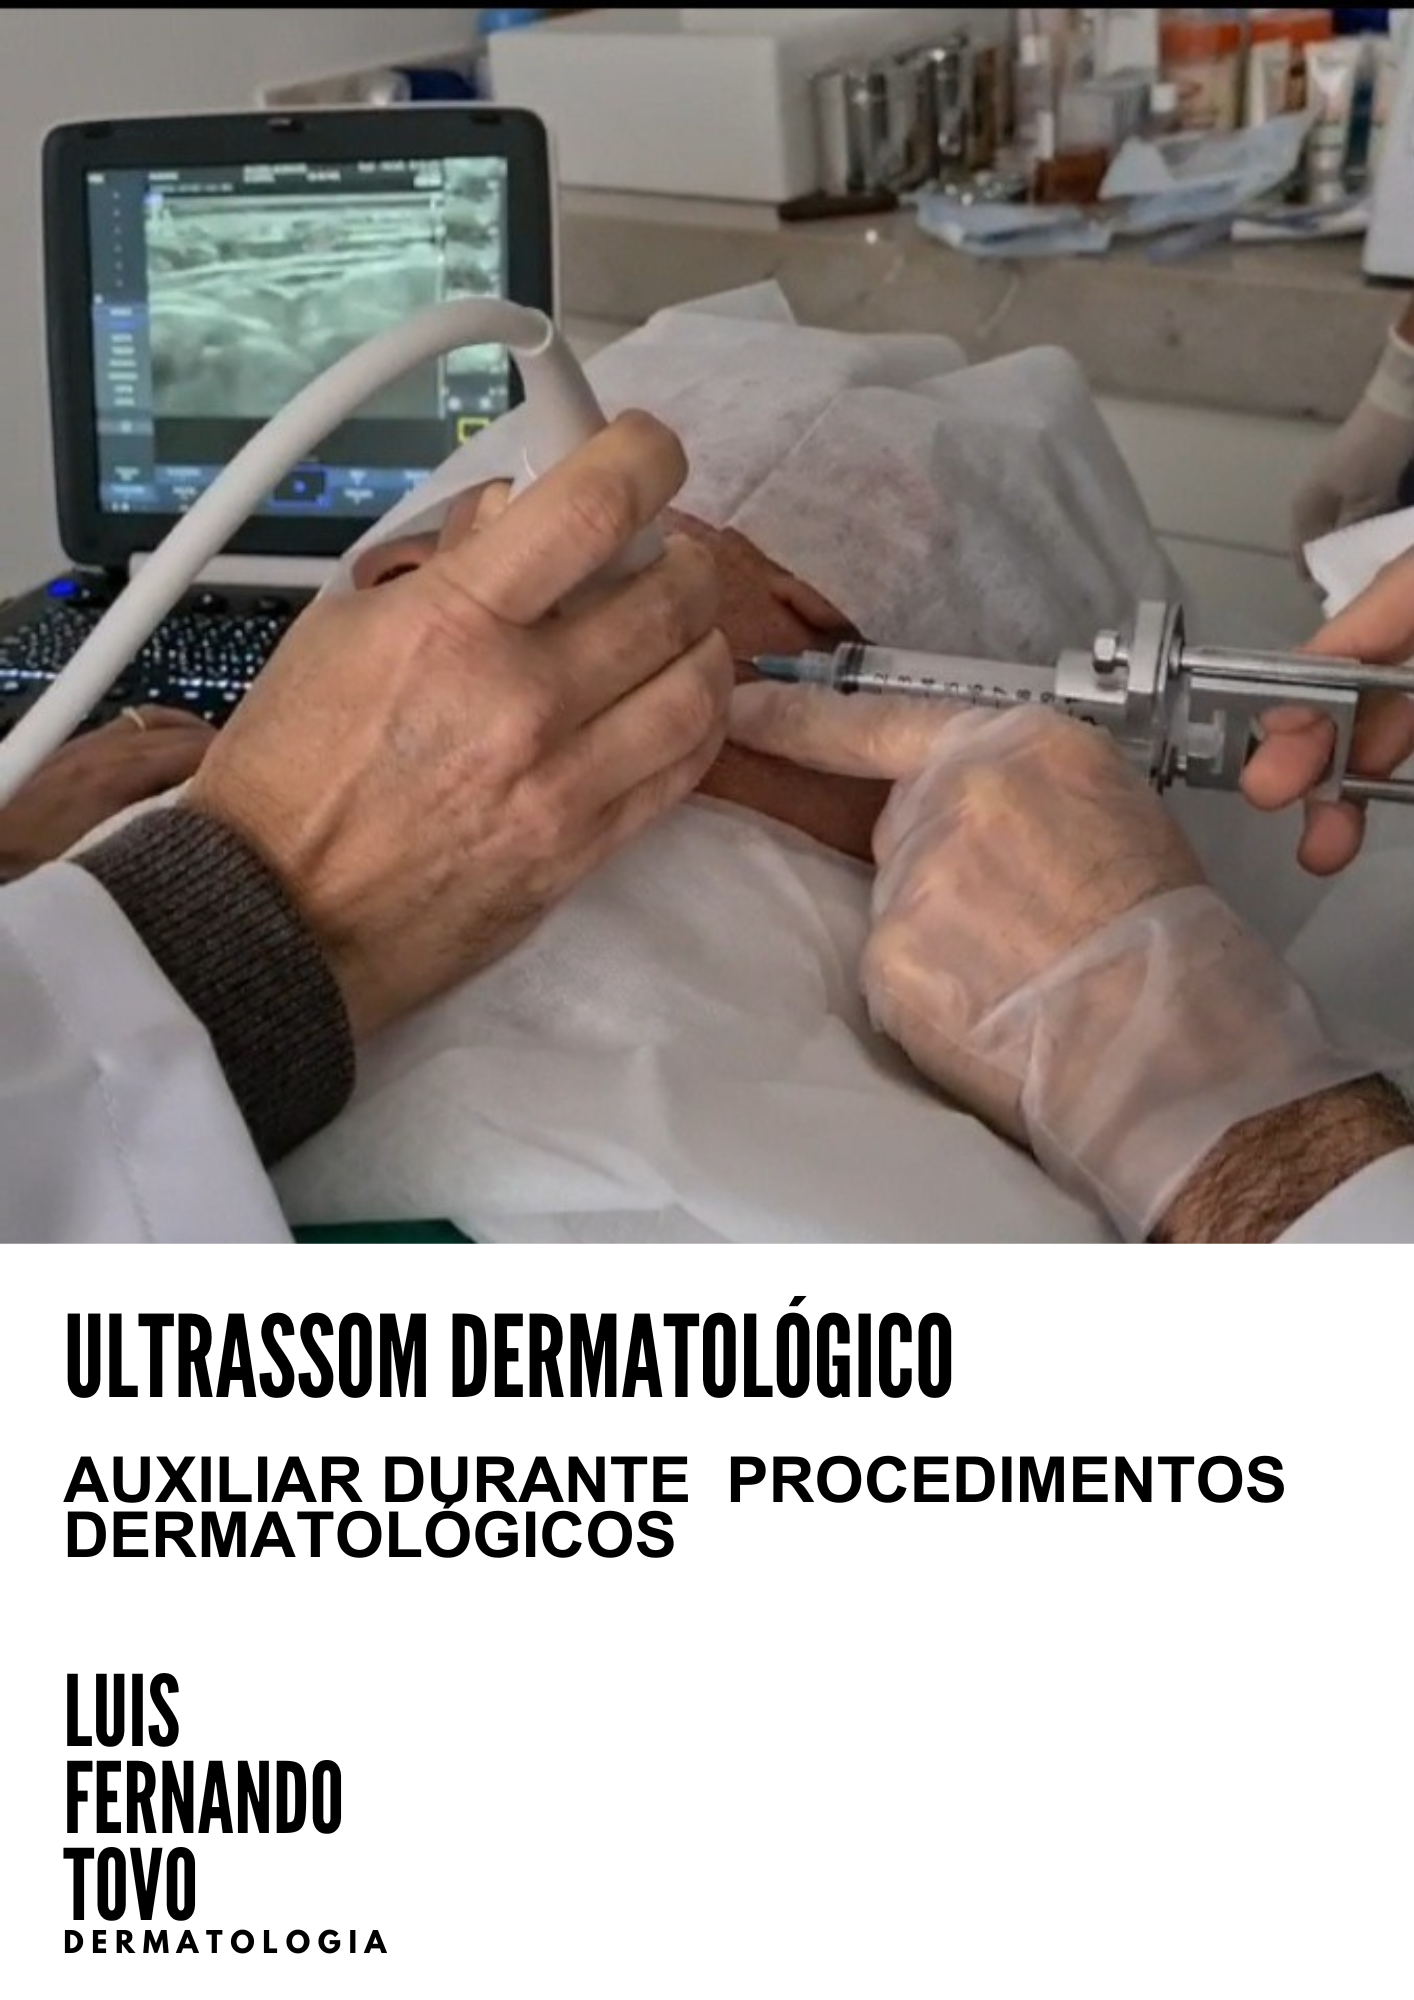 ultrassom dermatológico e seu uso na dermatologia dr tovo luis fernando tovo clinica tovo dermatologia